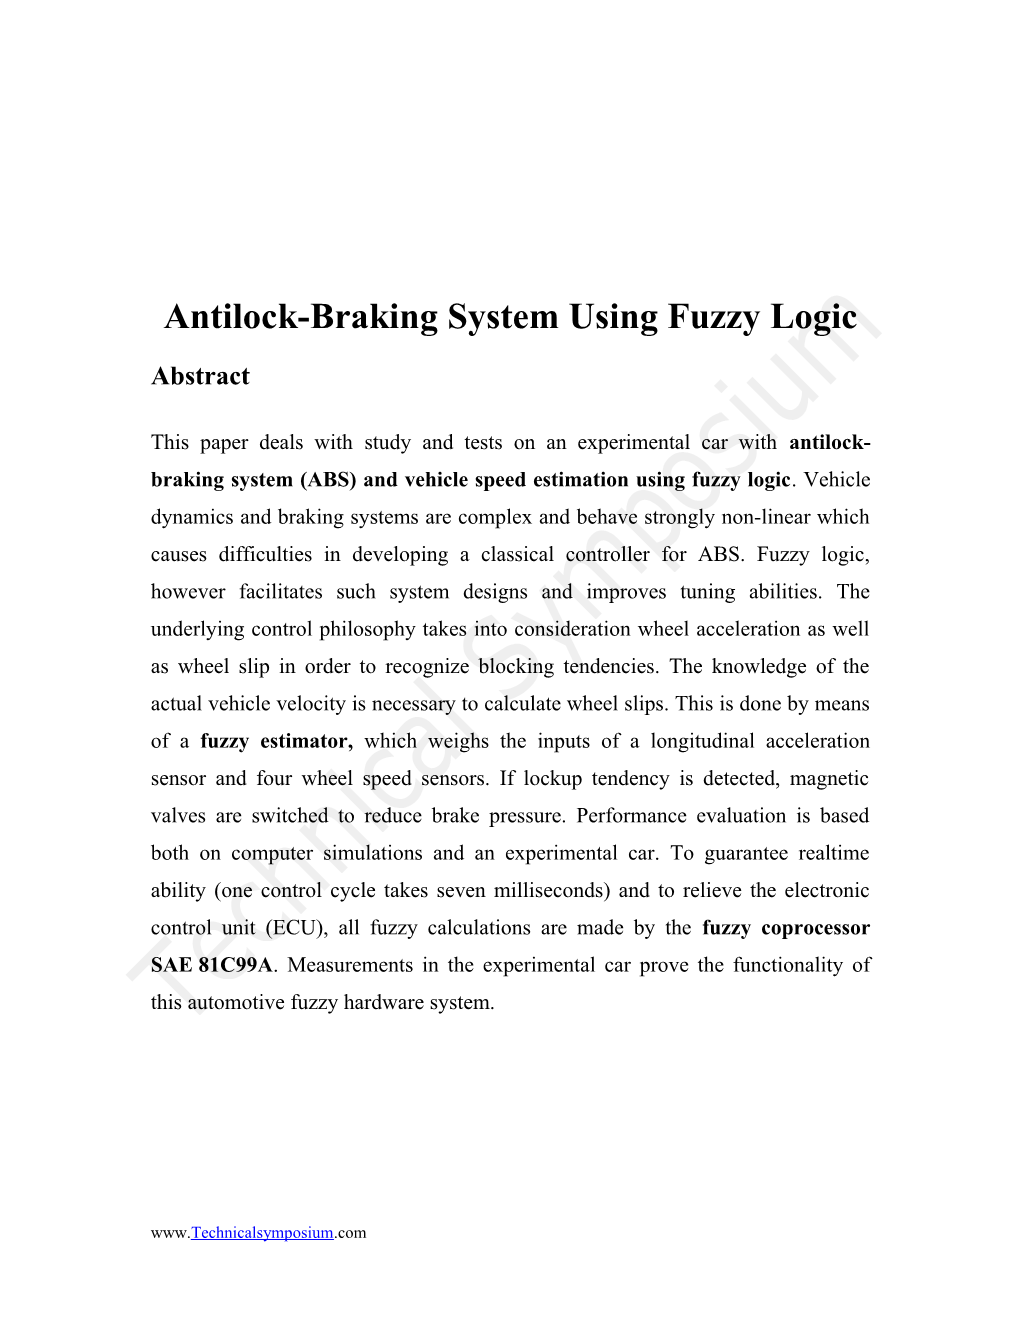 Antilock-Braking System Using Fuzzy Logic